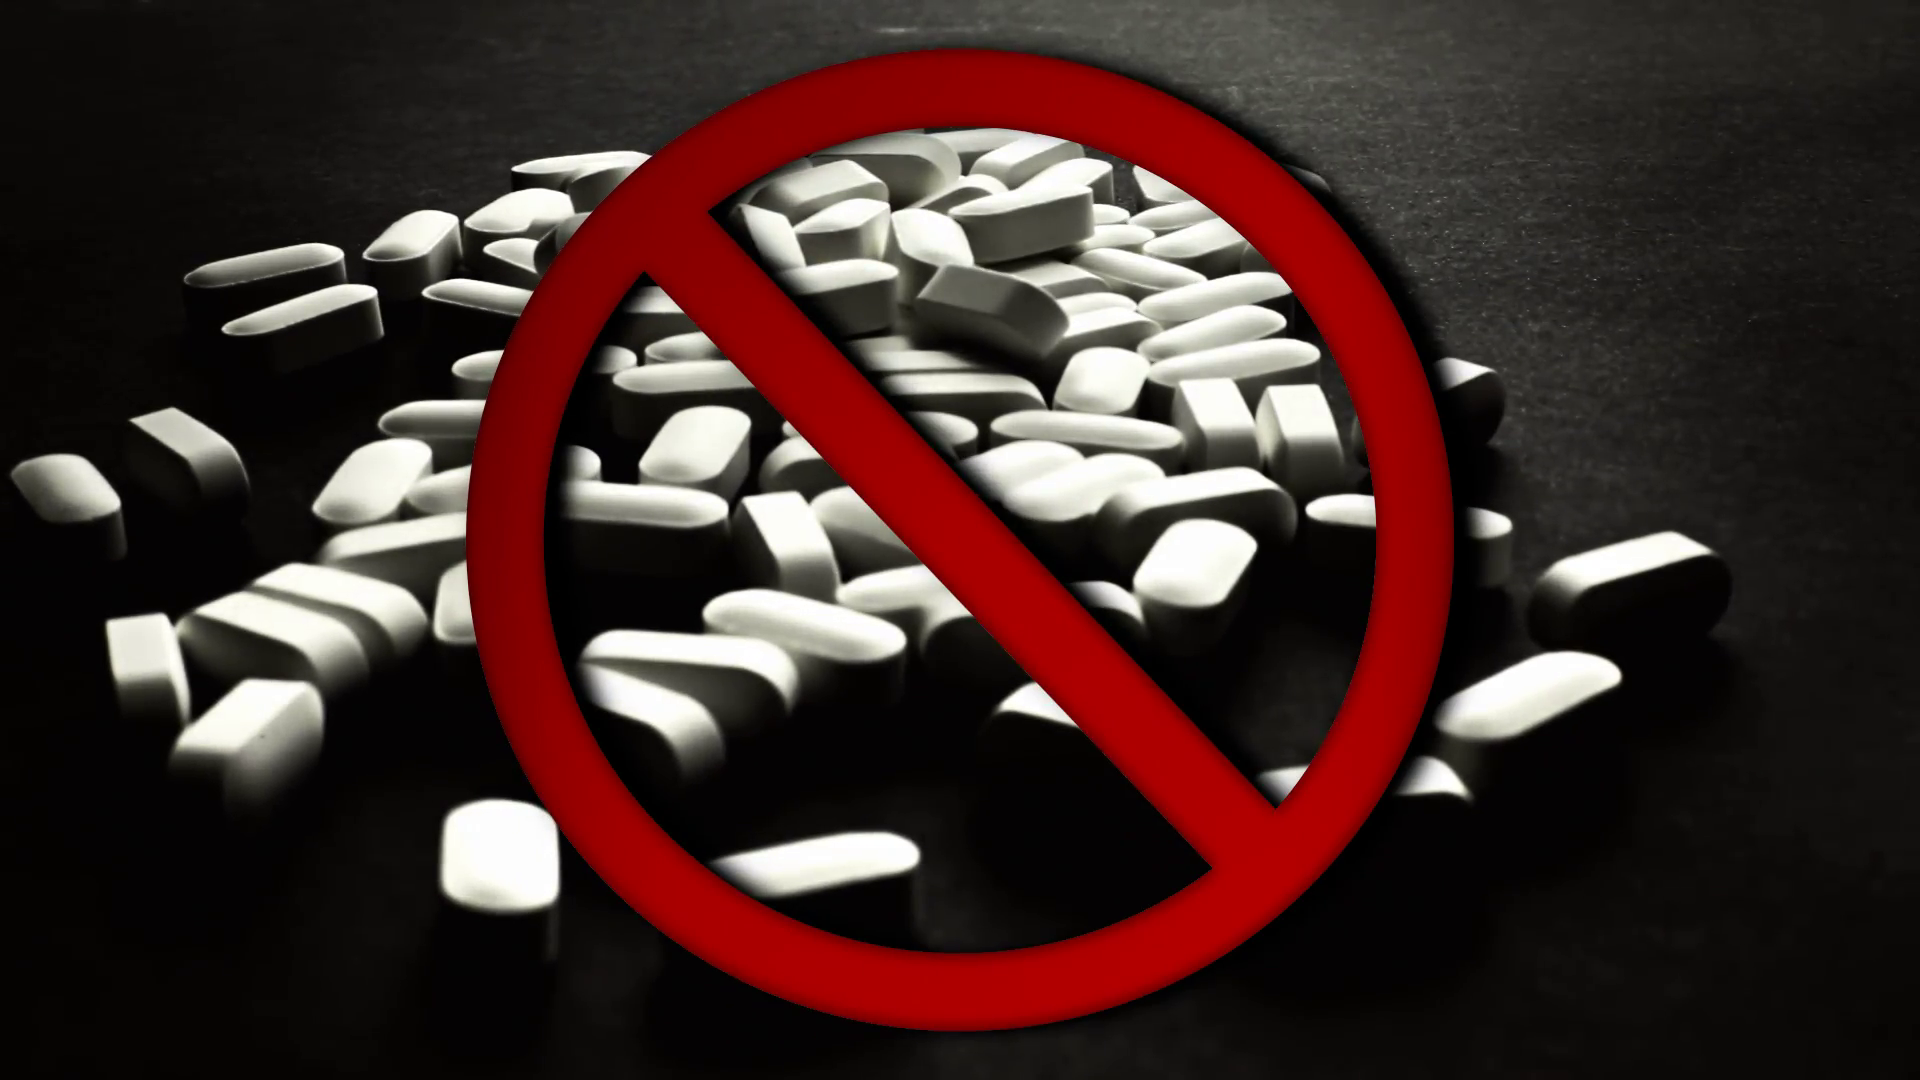 No Pills Allowed - No Pills Sign , HD Wallpaper & Backgrounds